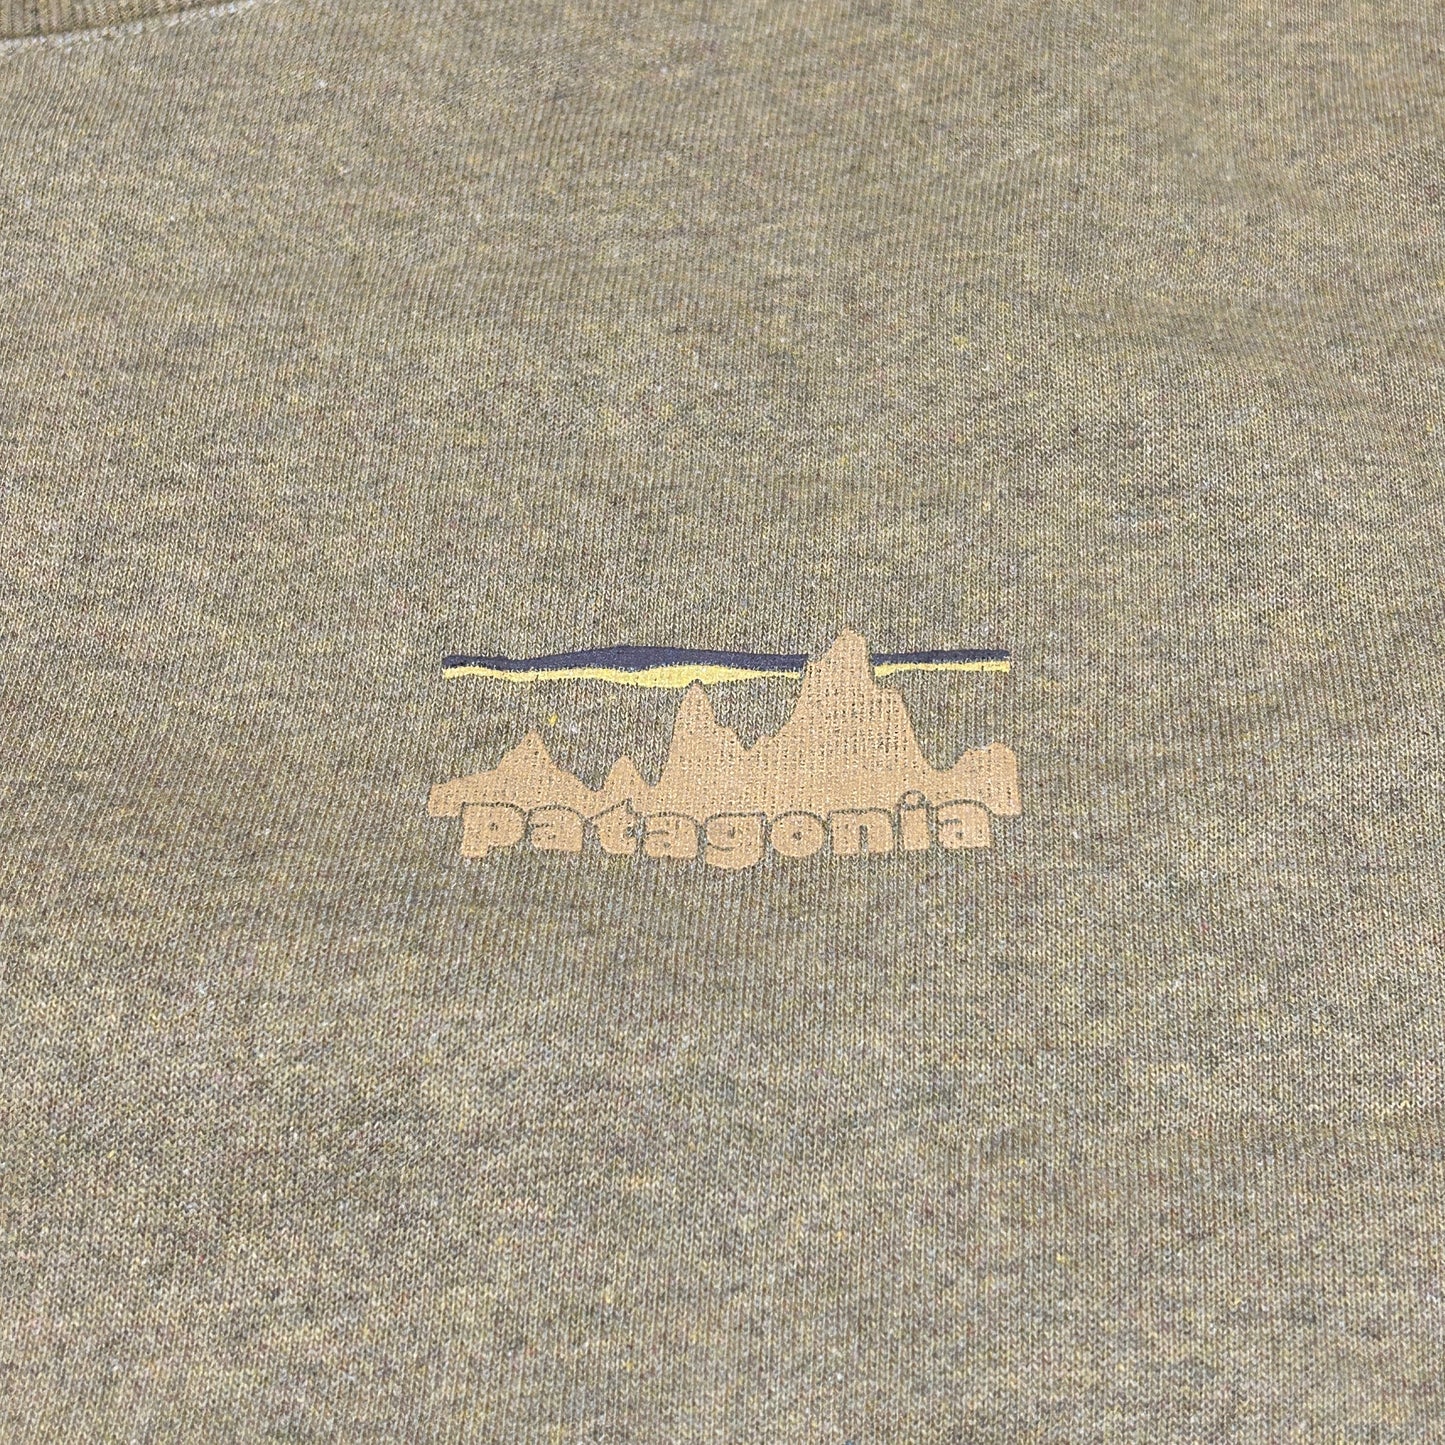 PATAGONIA 73 Skyline Uprisal Crew Sweatshirt M's Sz S W's Sz M  Nest Brown (New)